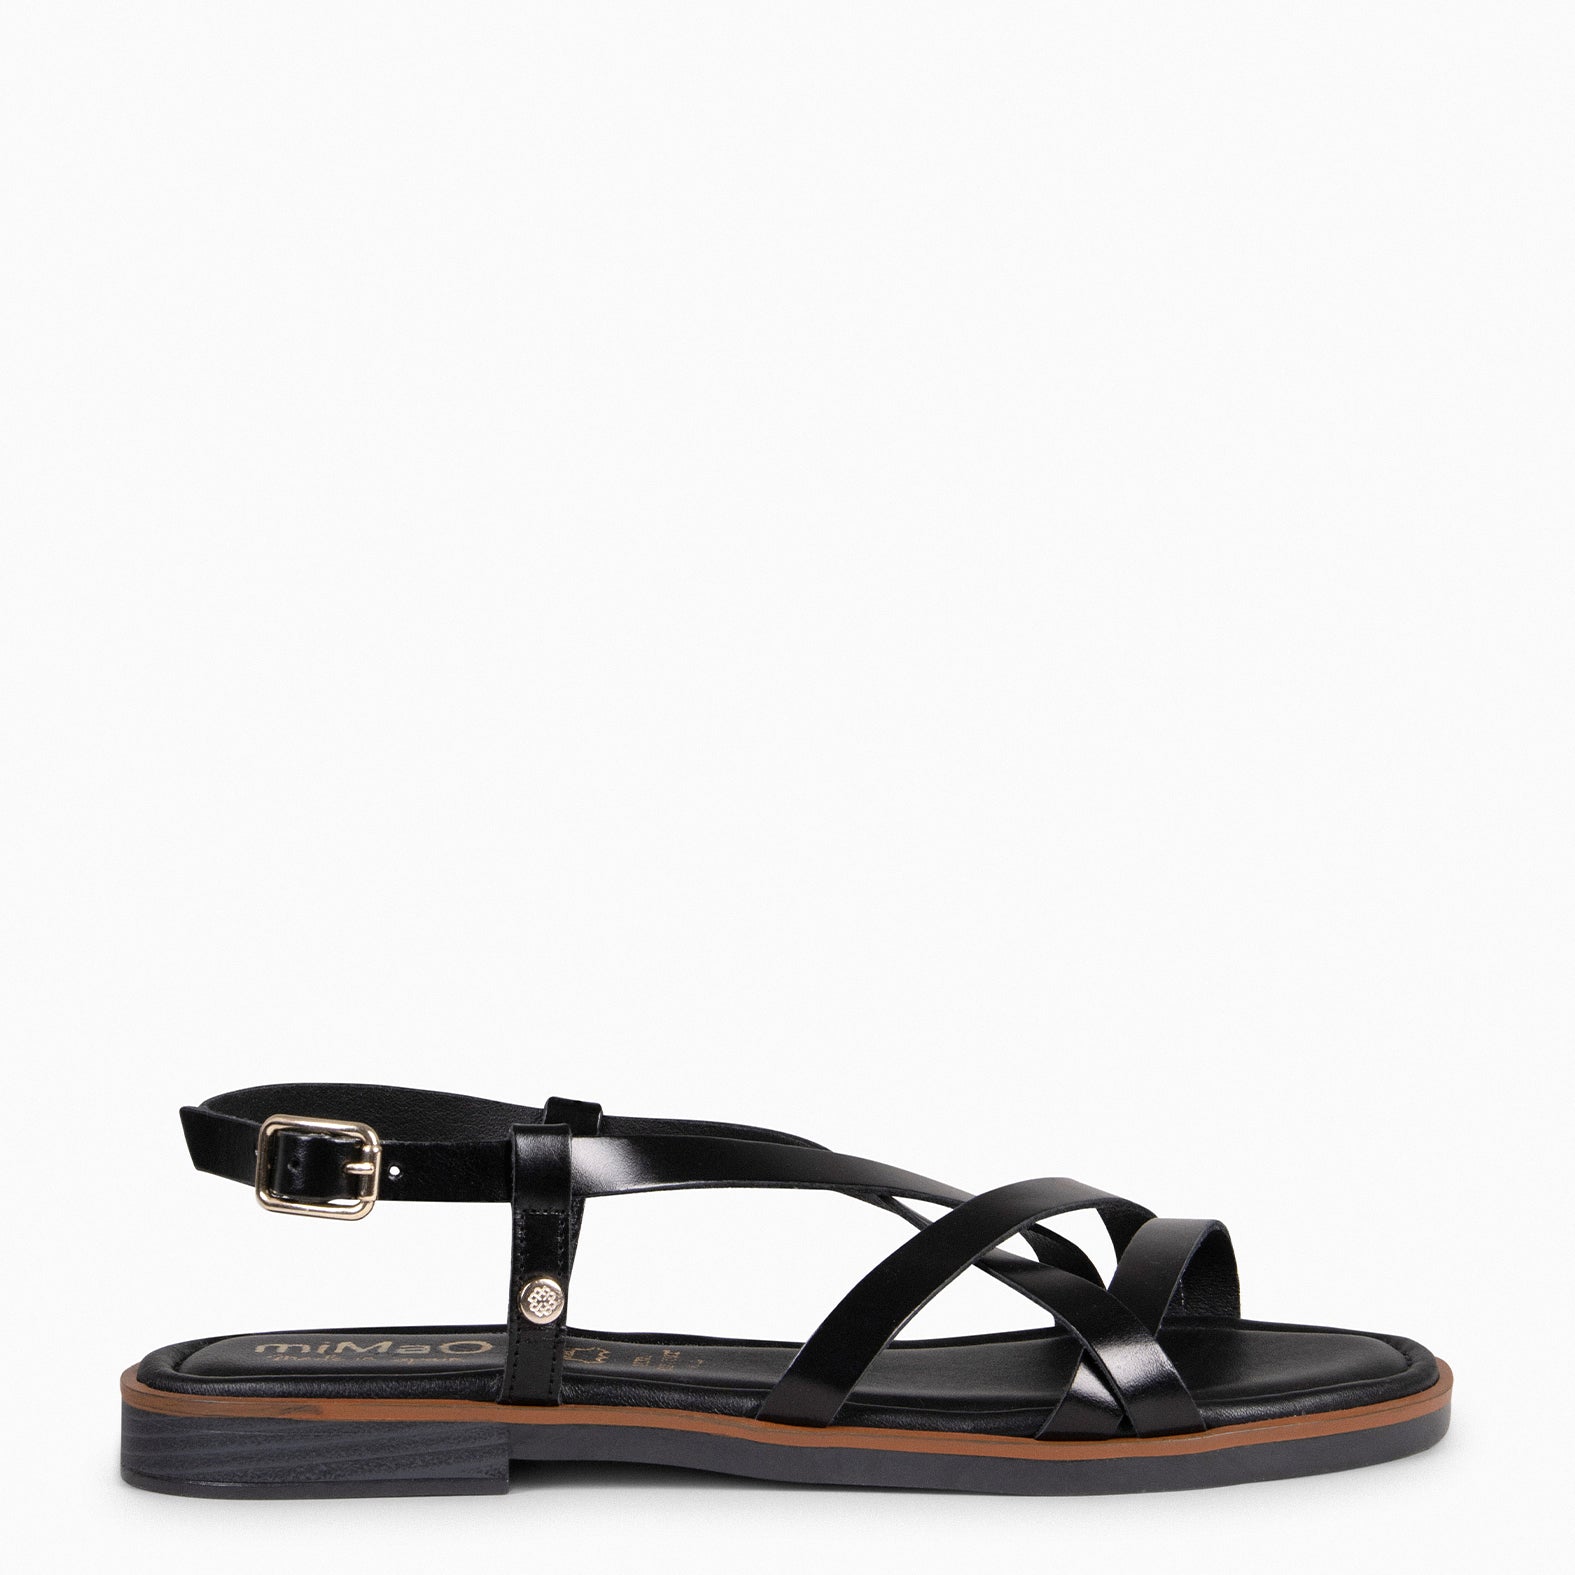 ELVA - BLACK Elegant Flat Sandals 